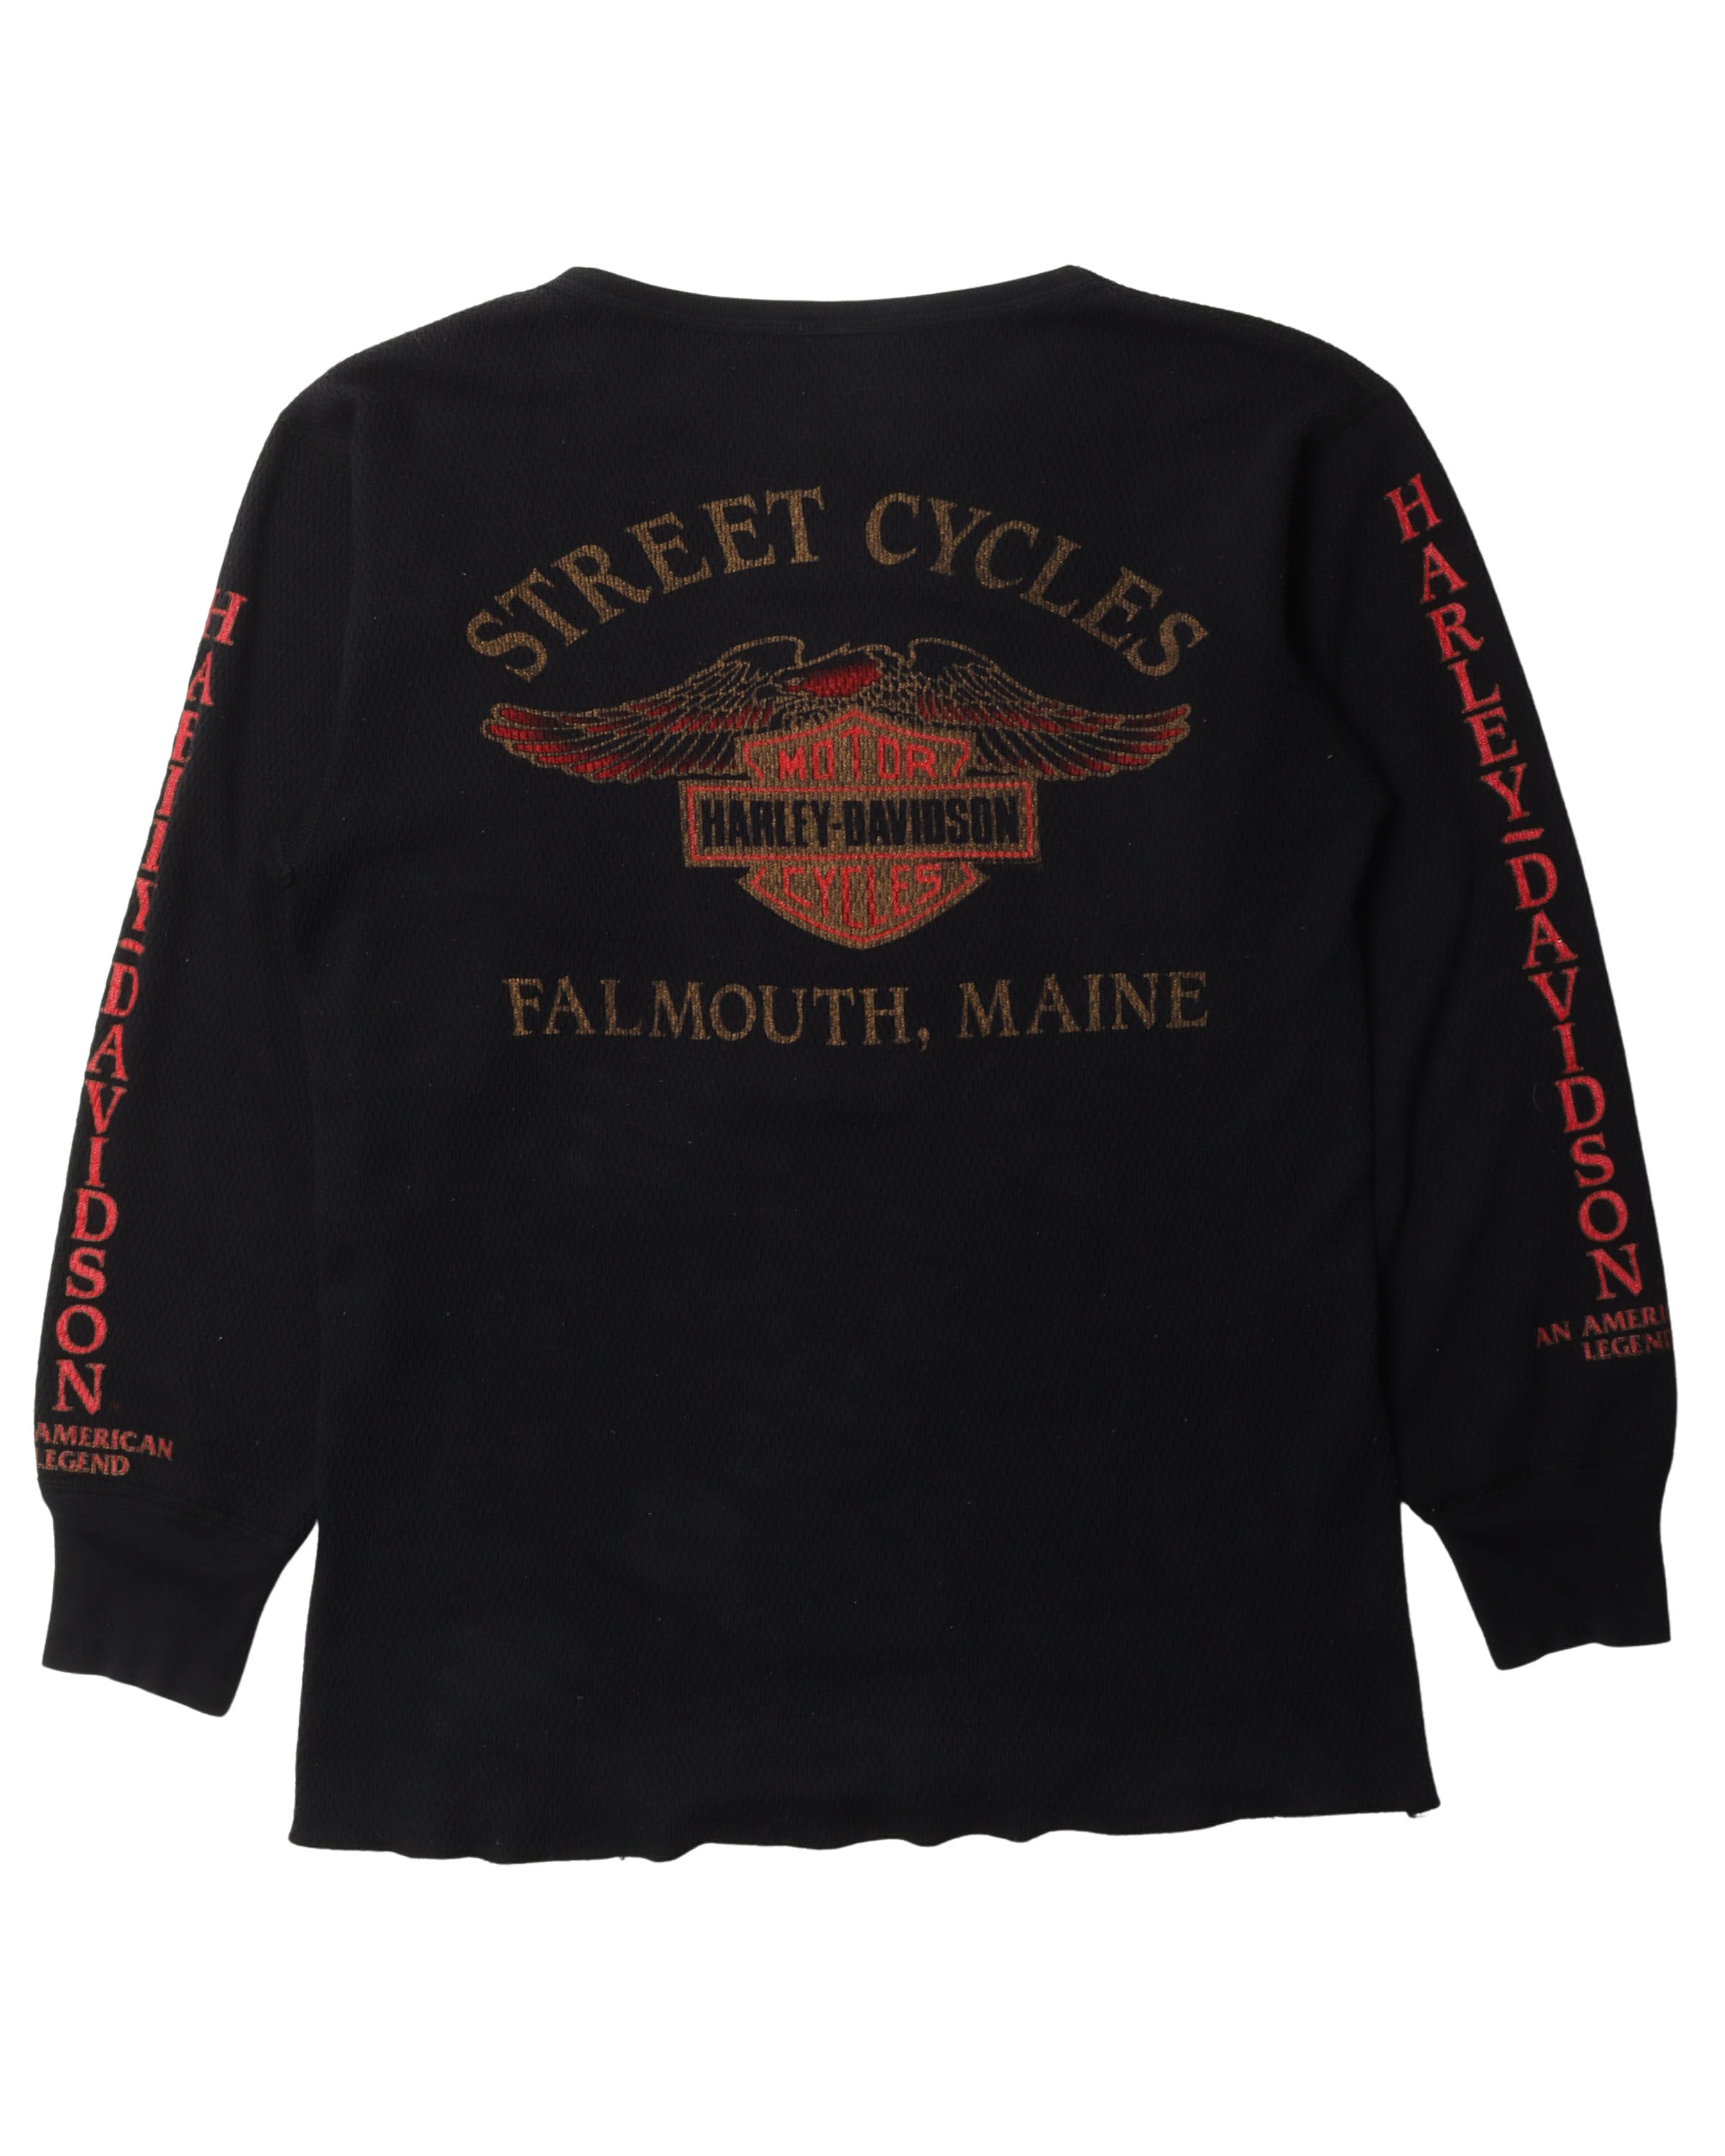 Harley Davidson "Street Cycles" Thermal Long Sleeve Shirt